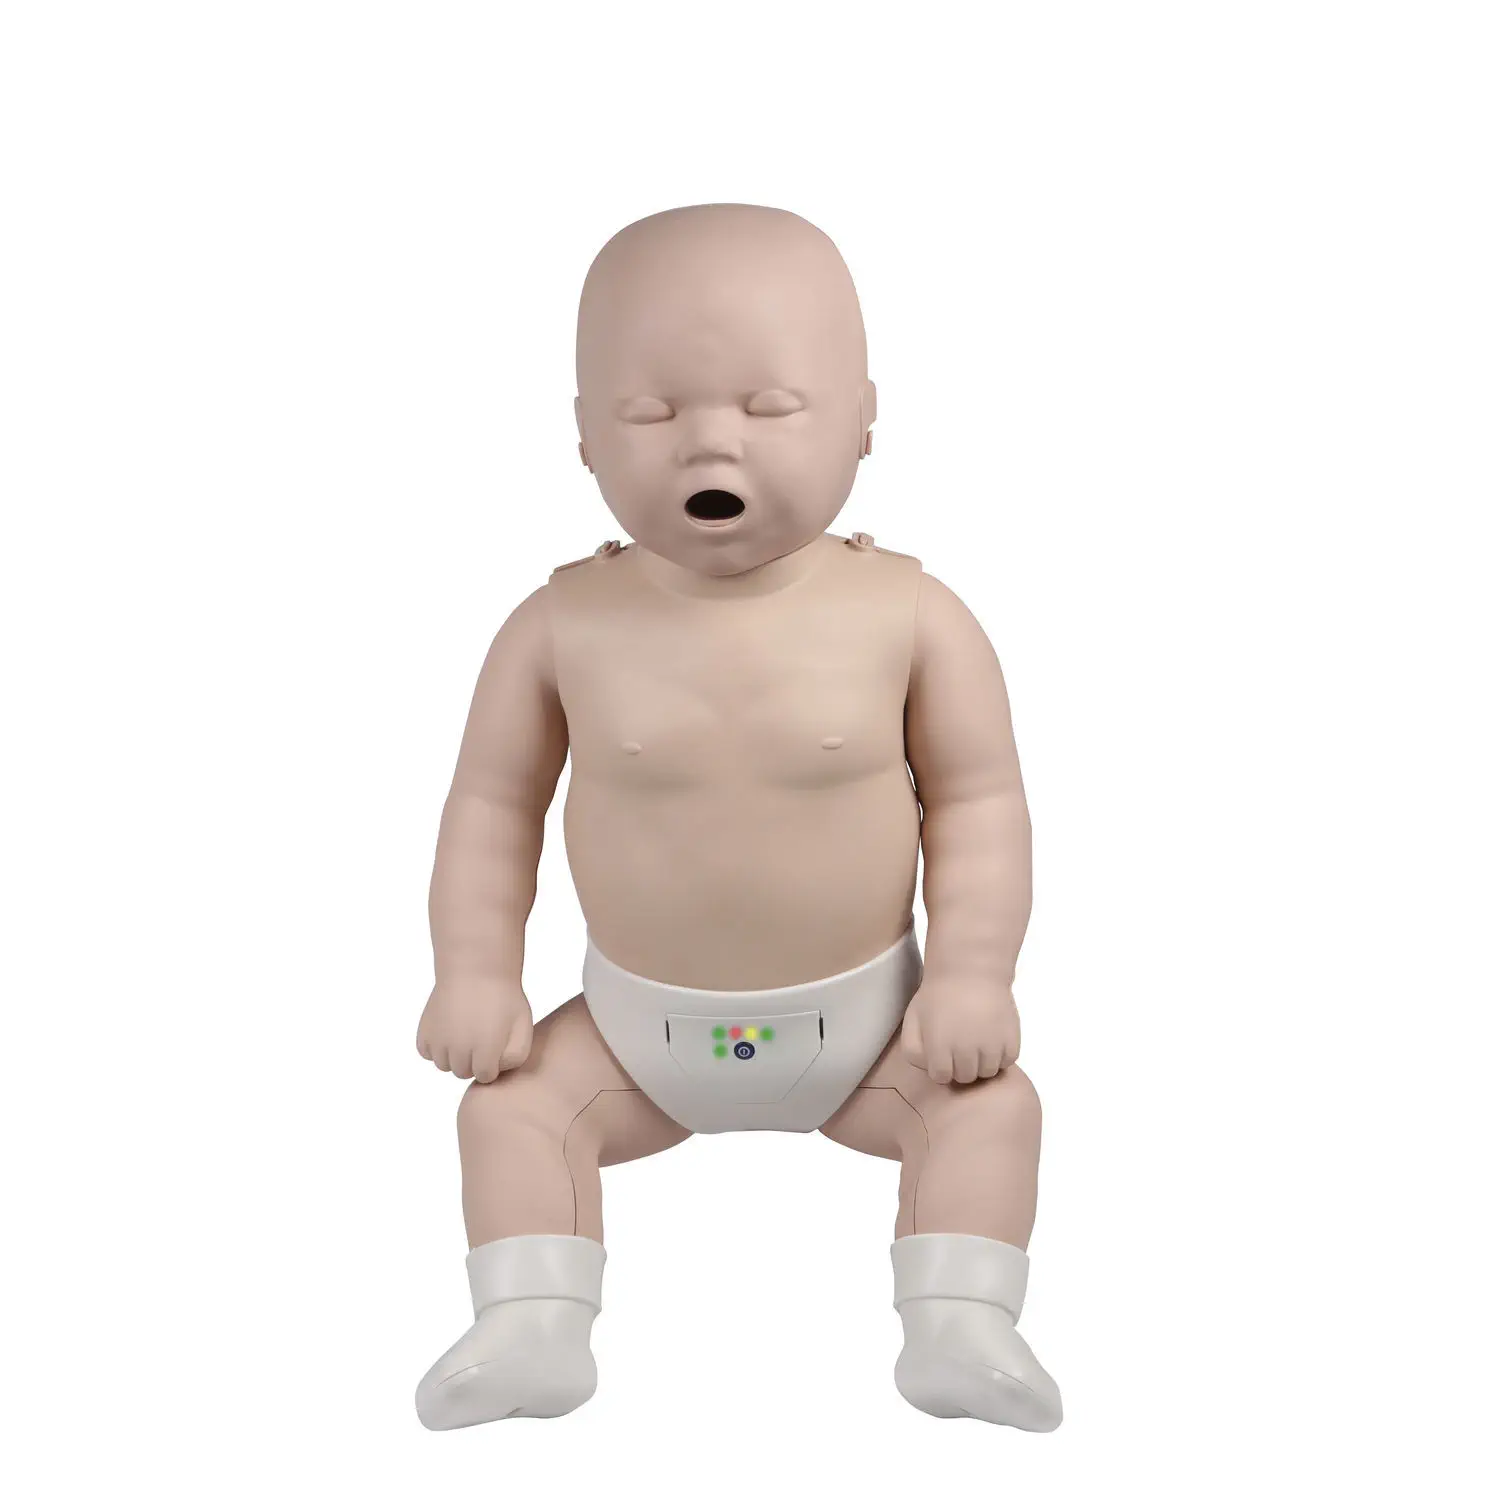 ชุดอุปกรณ์ช่วยชีวิตทารกแรกคลอด  CPR training manikin R19200  Erler-Zimmer